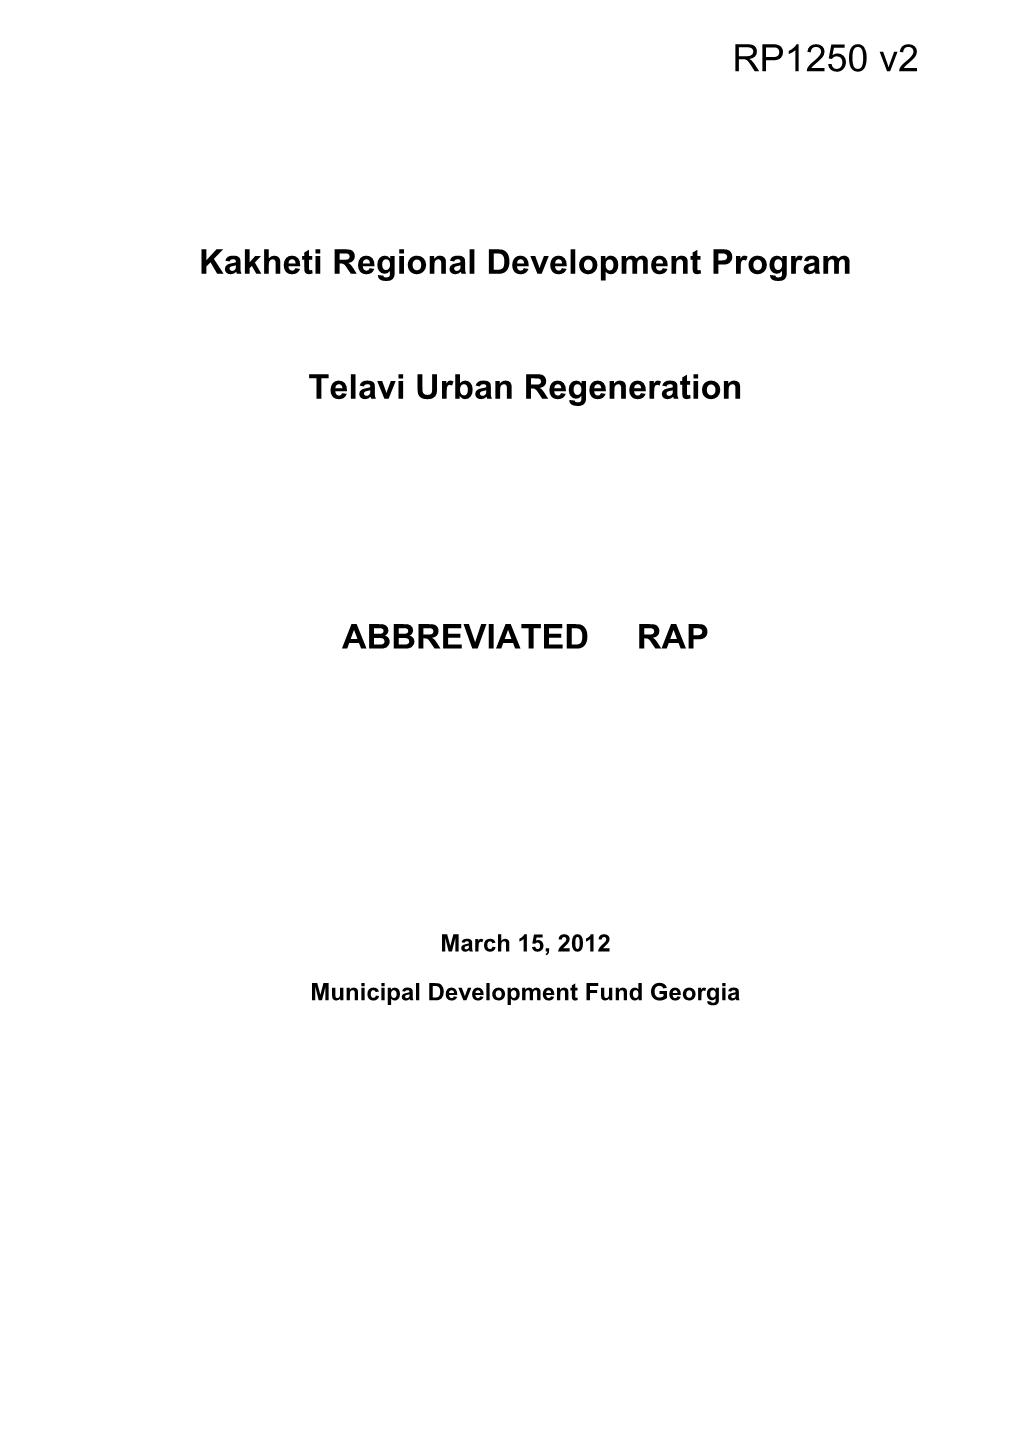 Kakheti Regional Development Program